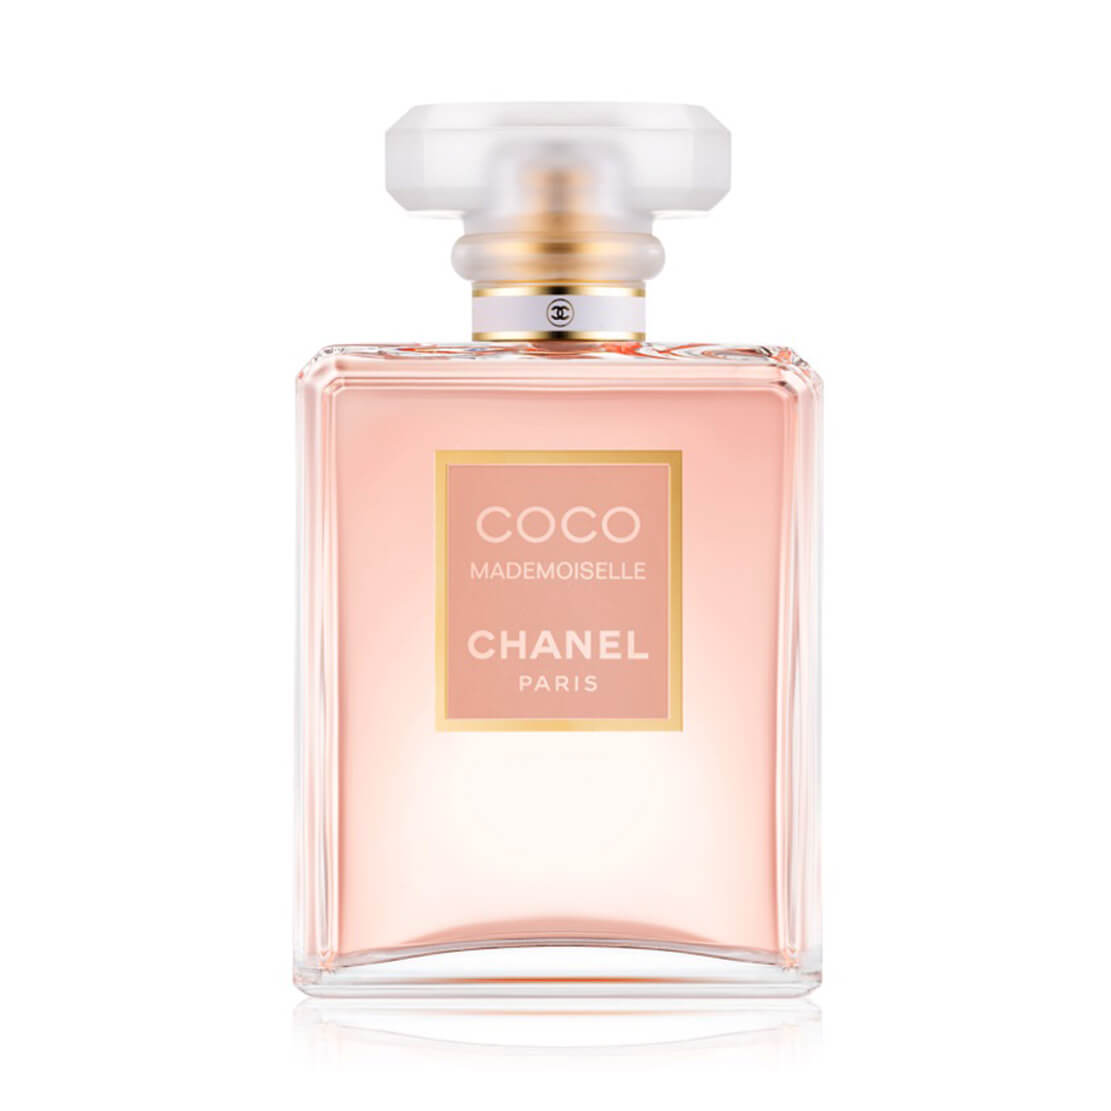 CHANEL Les Exclusifs De Chanel GARDENIA Eau de Parfum.05oz/1.5mlSAMPLE-AUTHENTIC